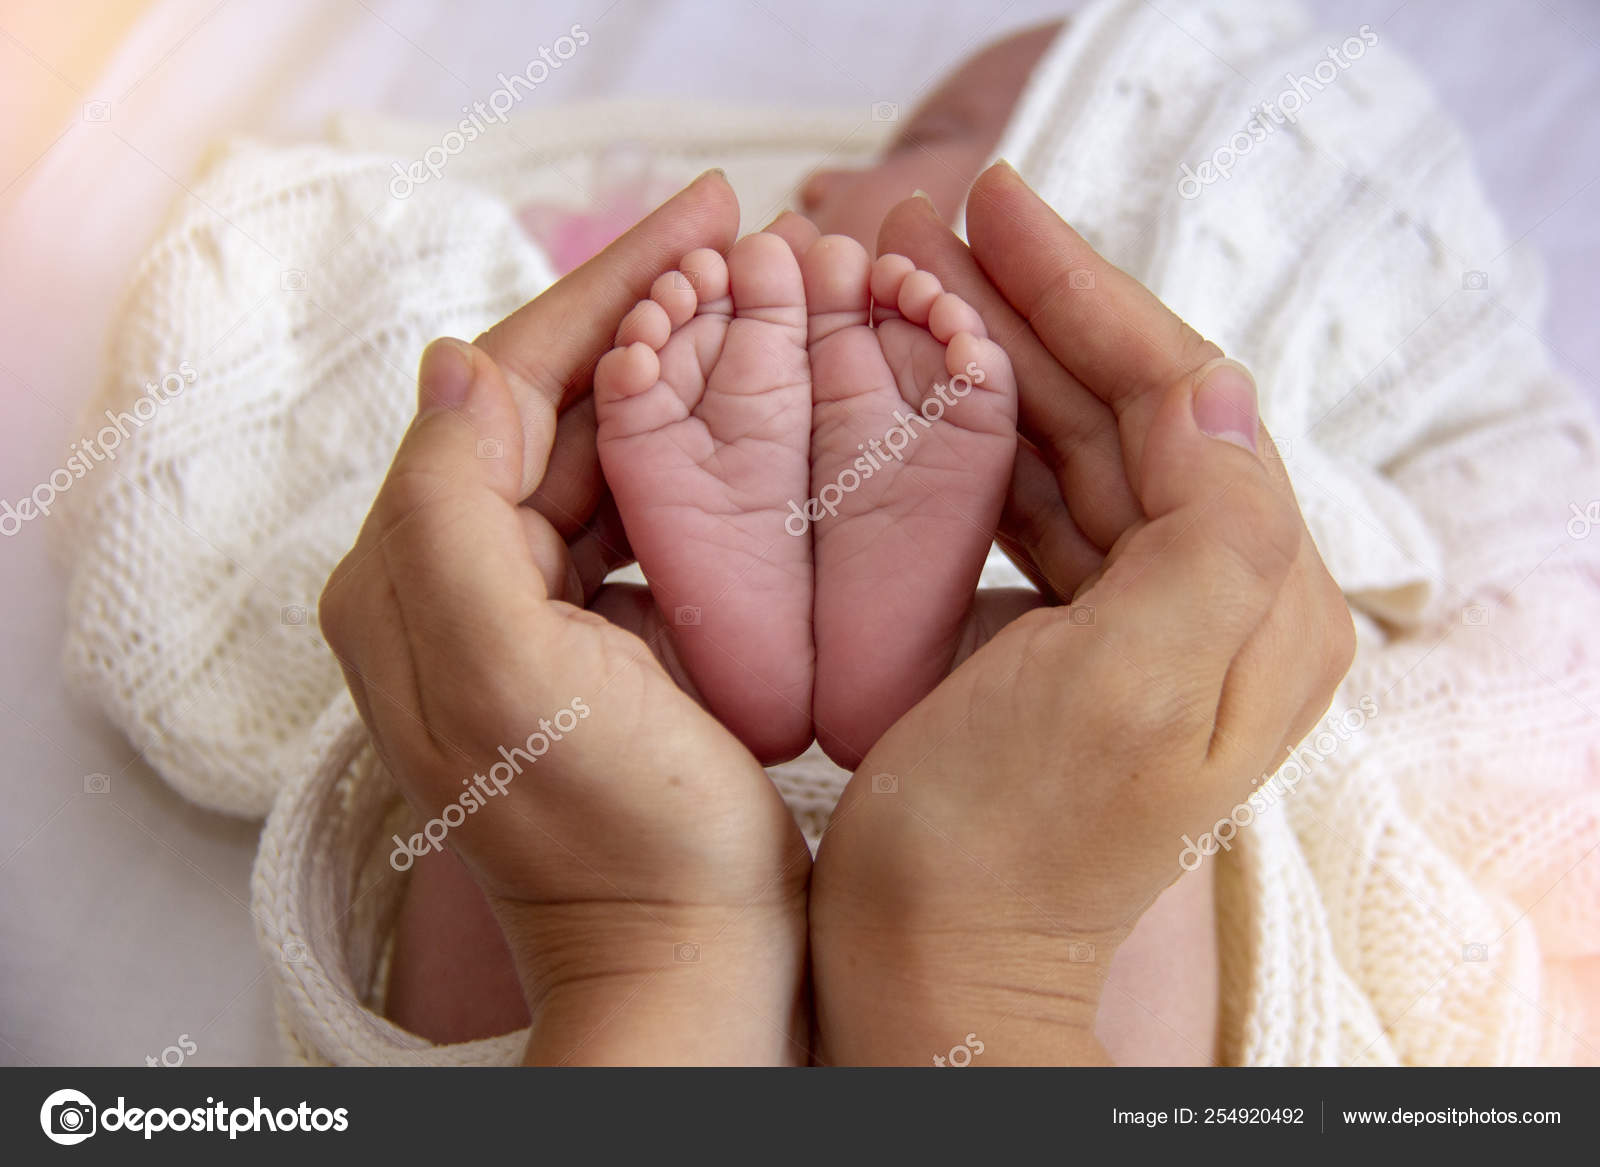 tiny baby tiny hand